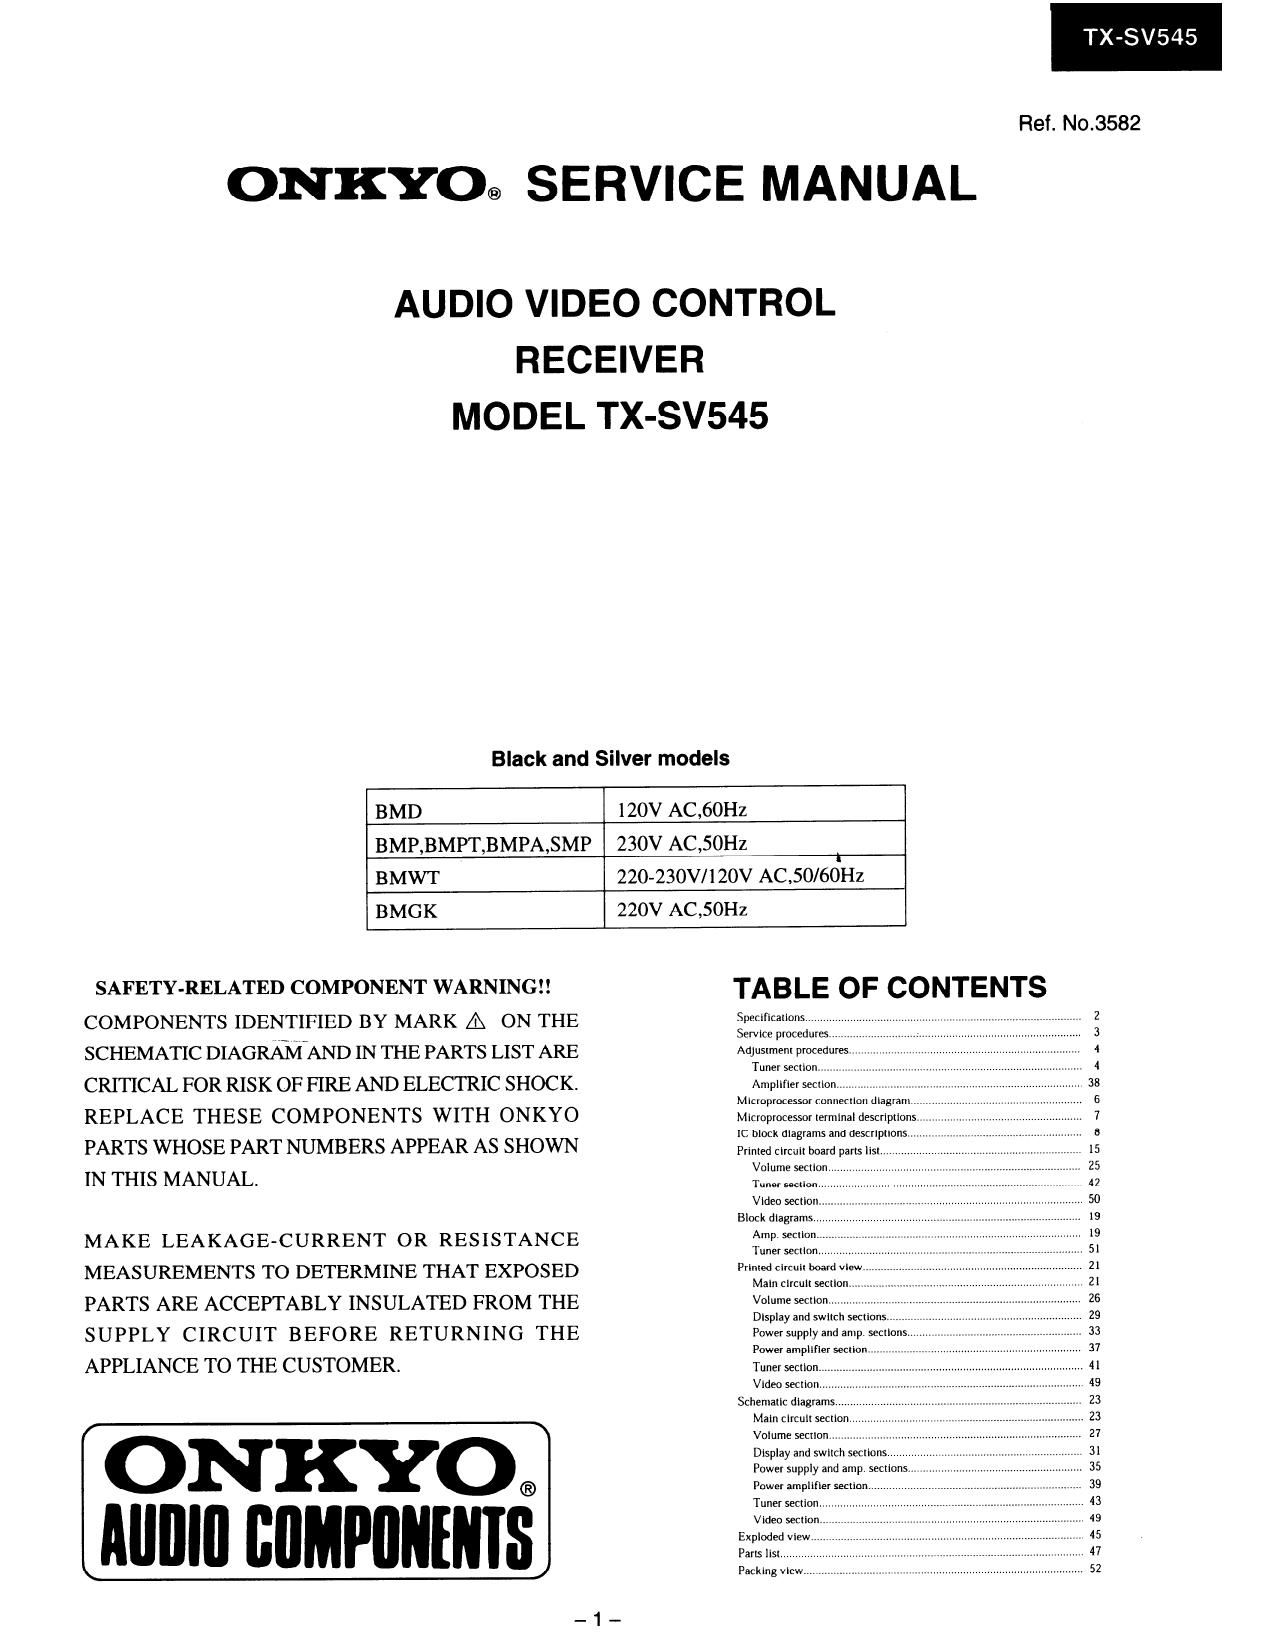 Onkyo TXSV 545 Service Manual